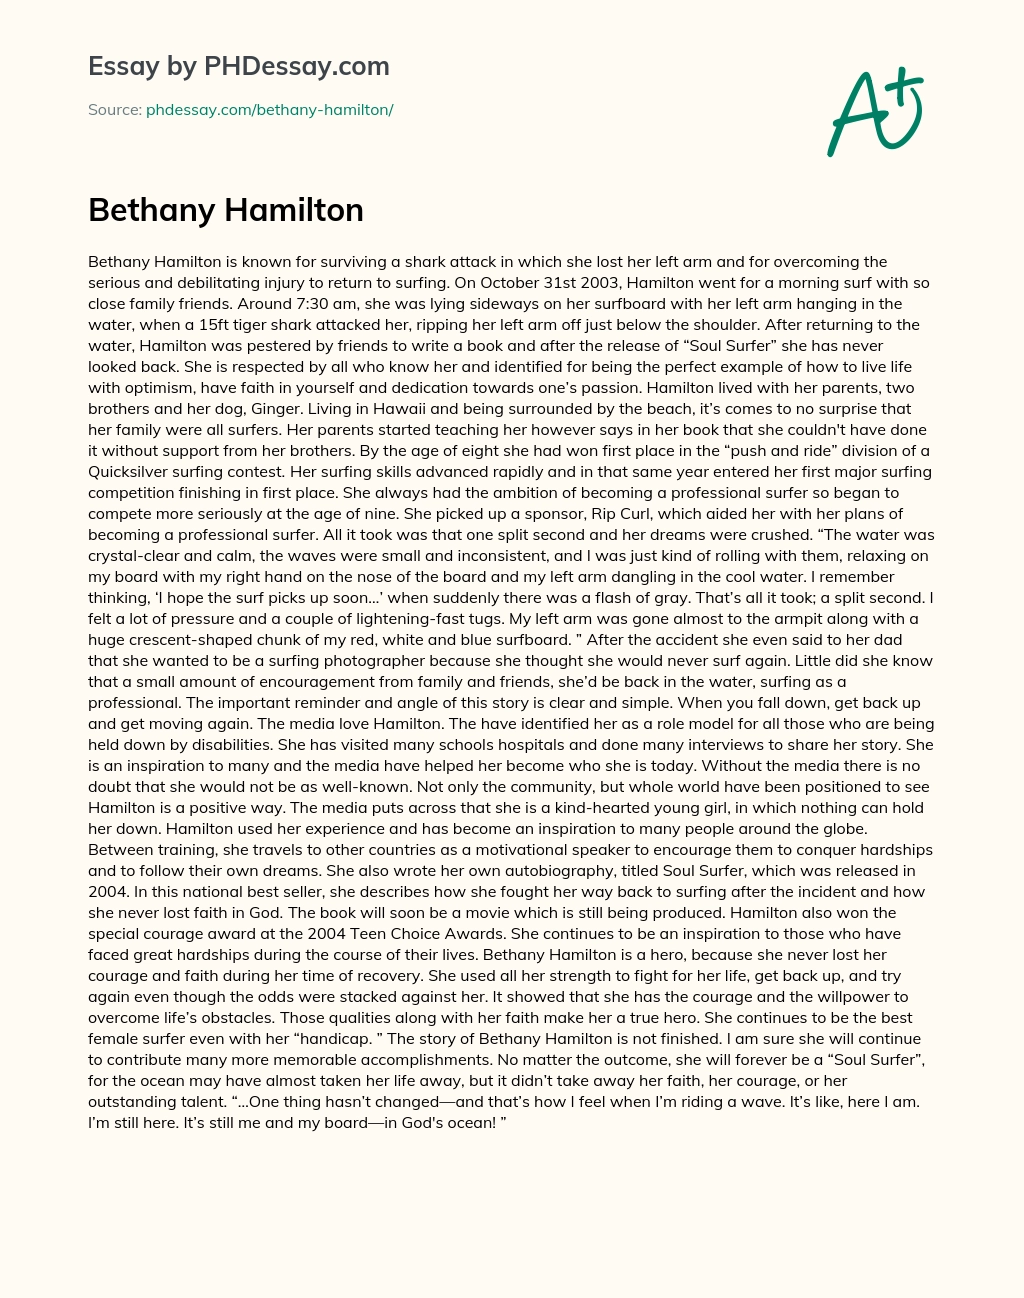 Bethany Hamilton essay